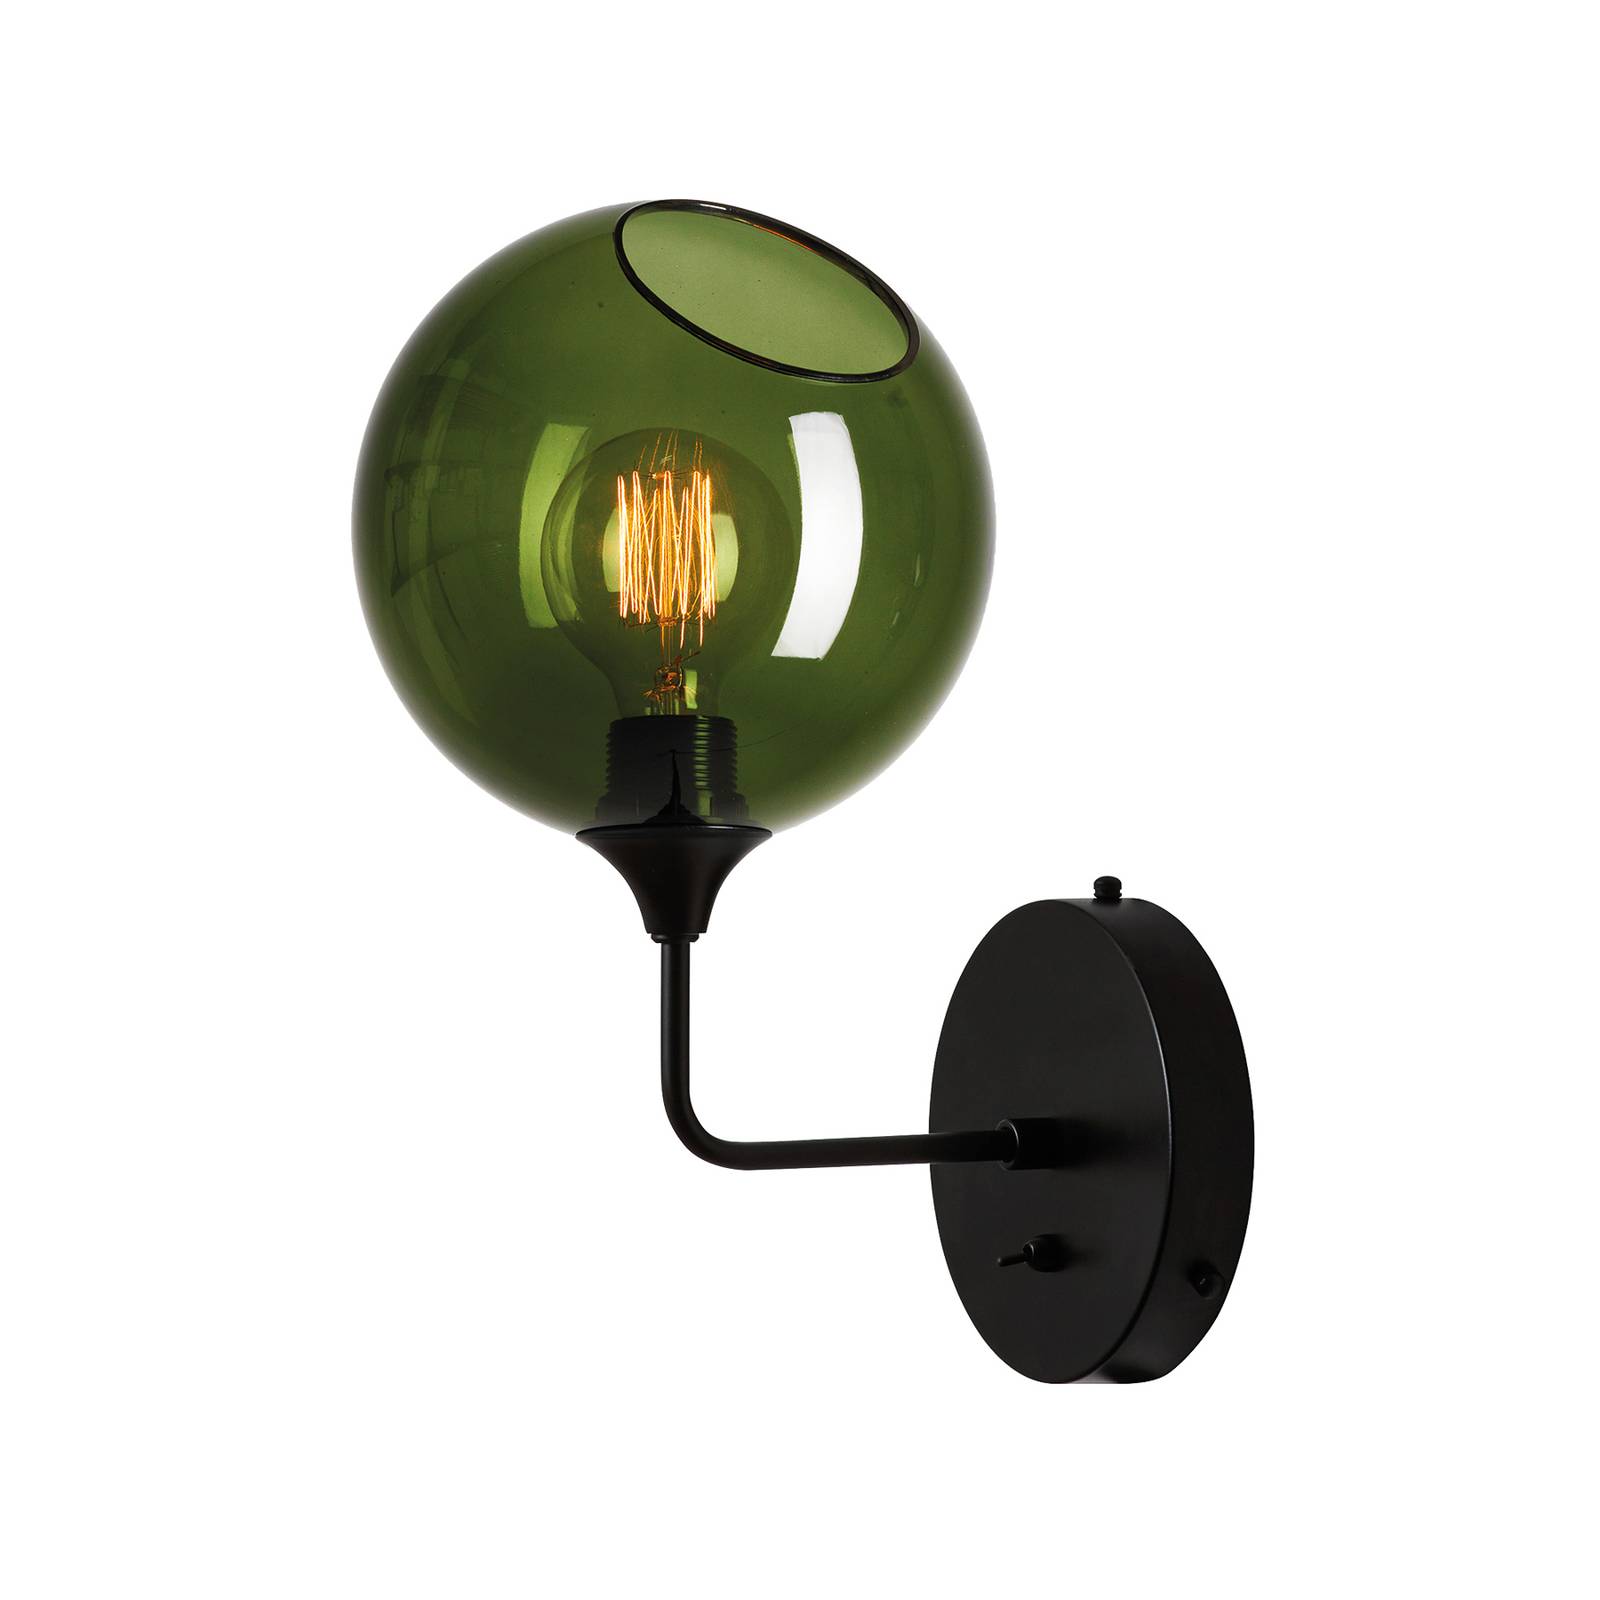 Design by us bálterem rövid fali lámpa, zöld, üveg, kézi fúvású